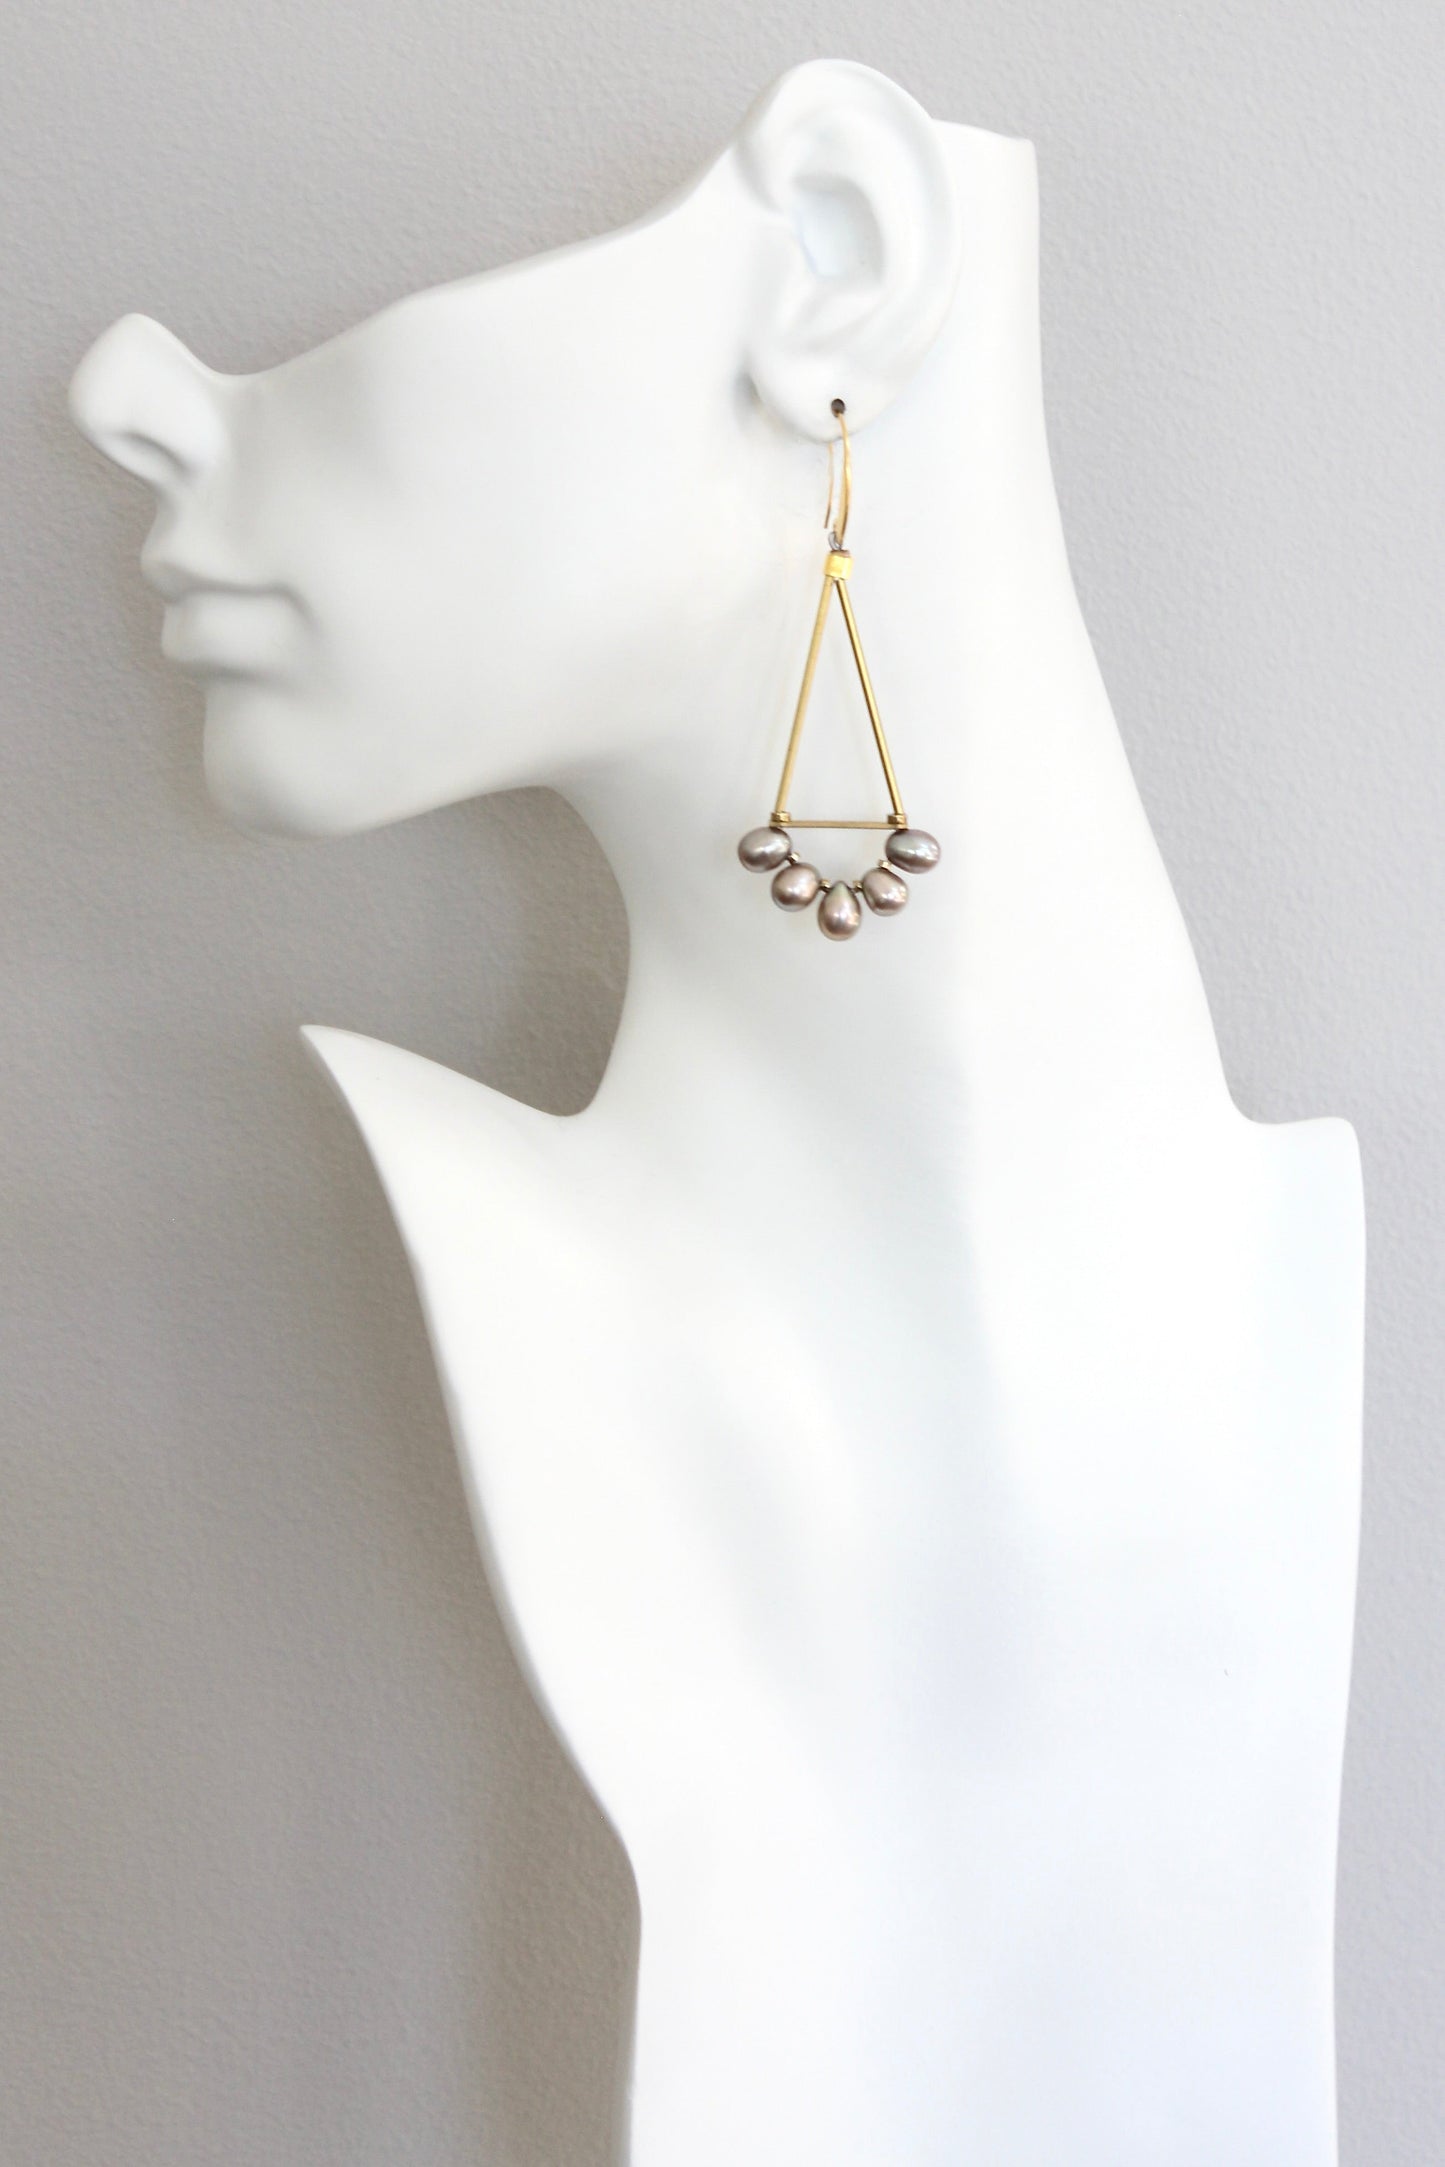 ISLE40 Freshwater pearl geometric earrings